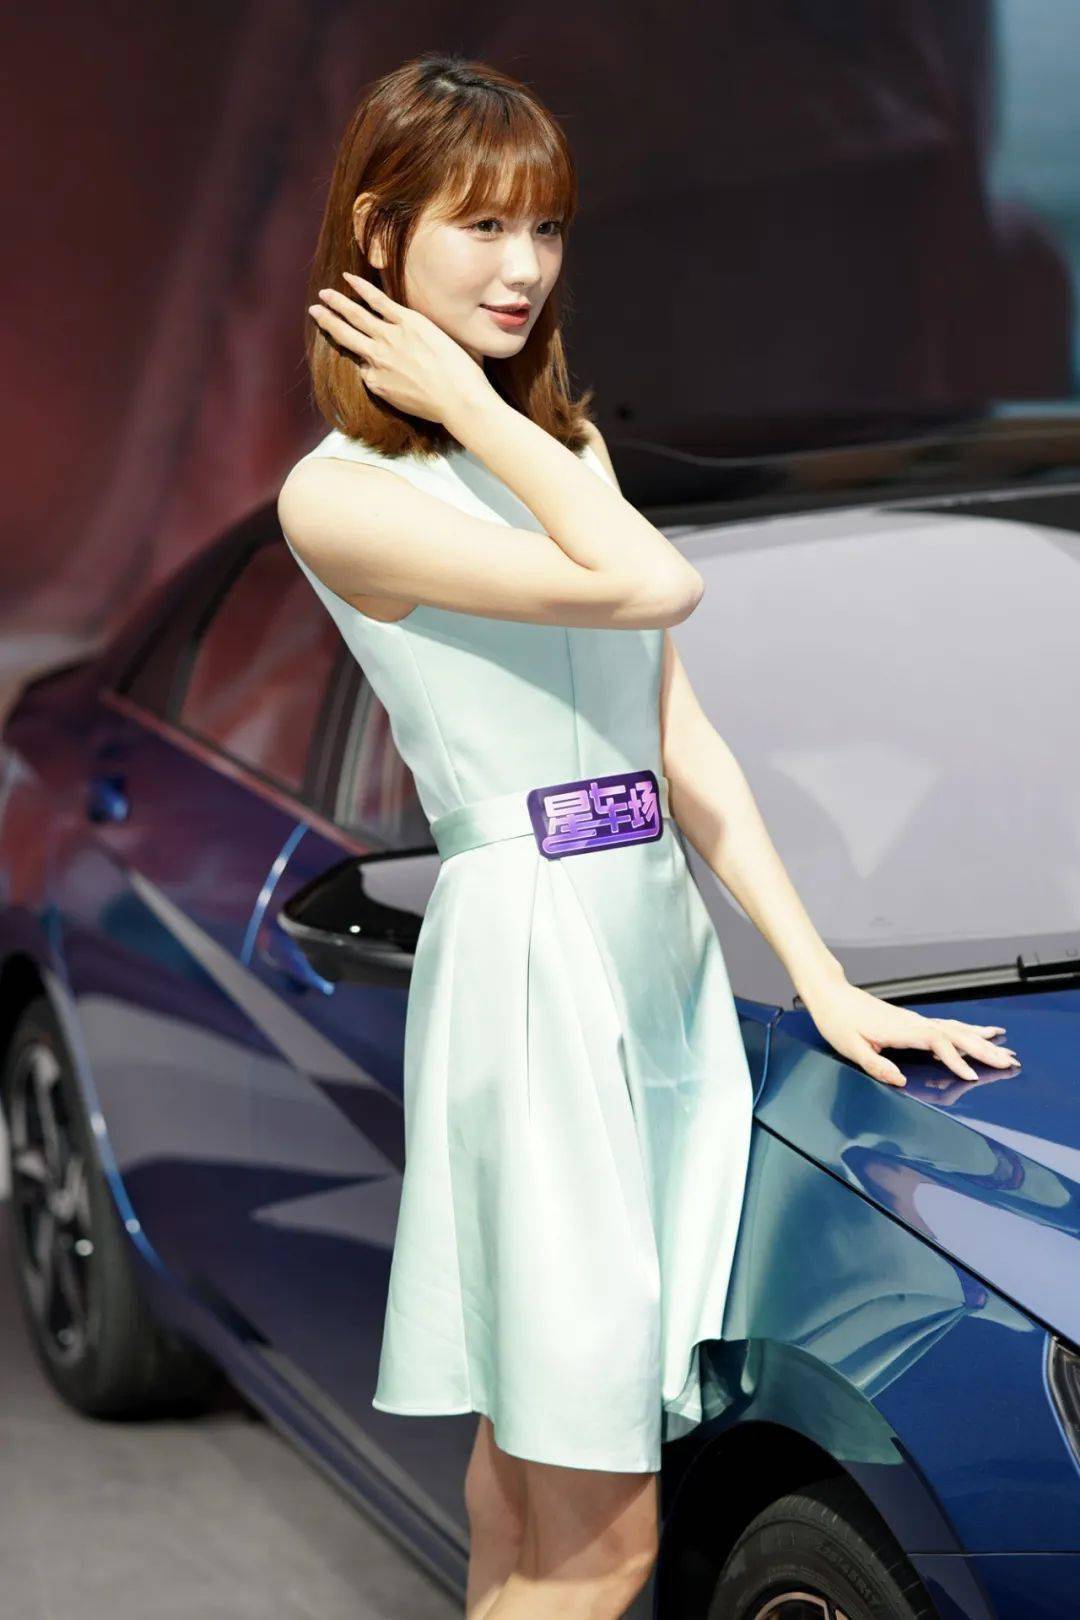 眉目传情这届北京车展模特也太漂亮了吧